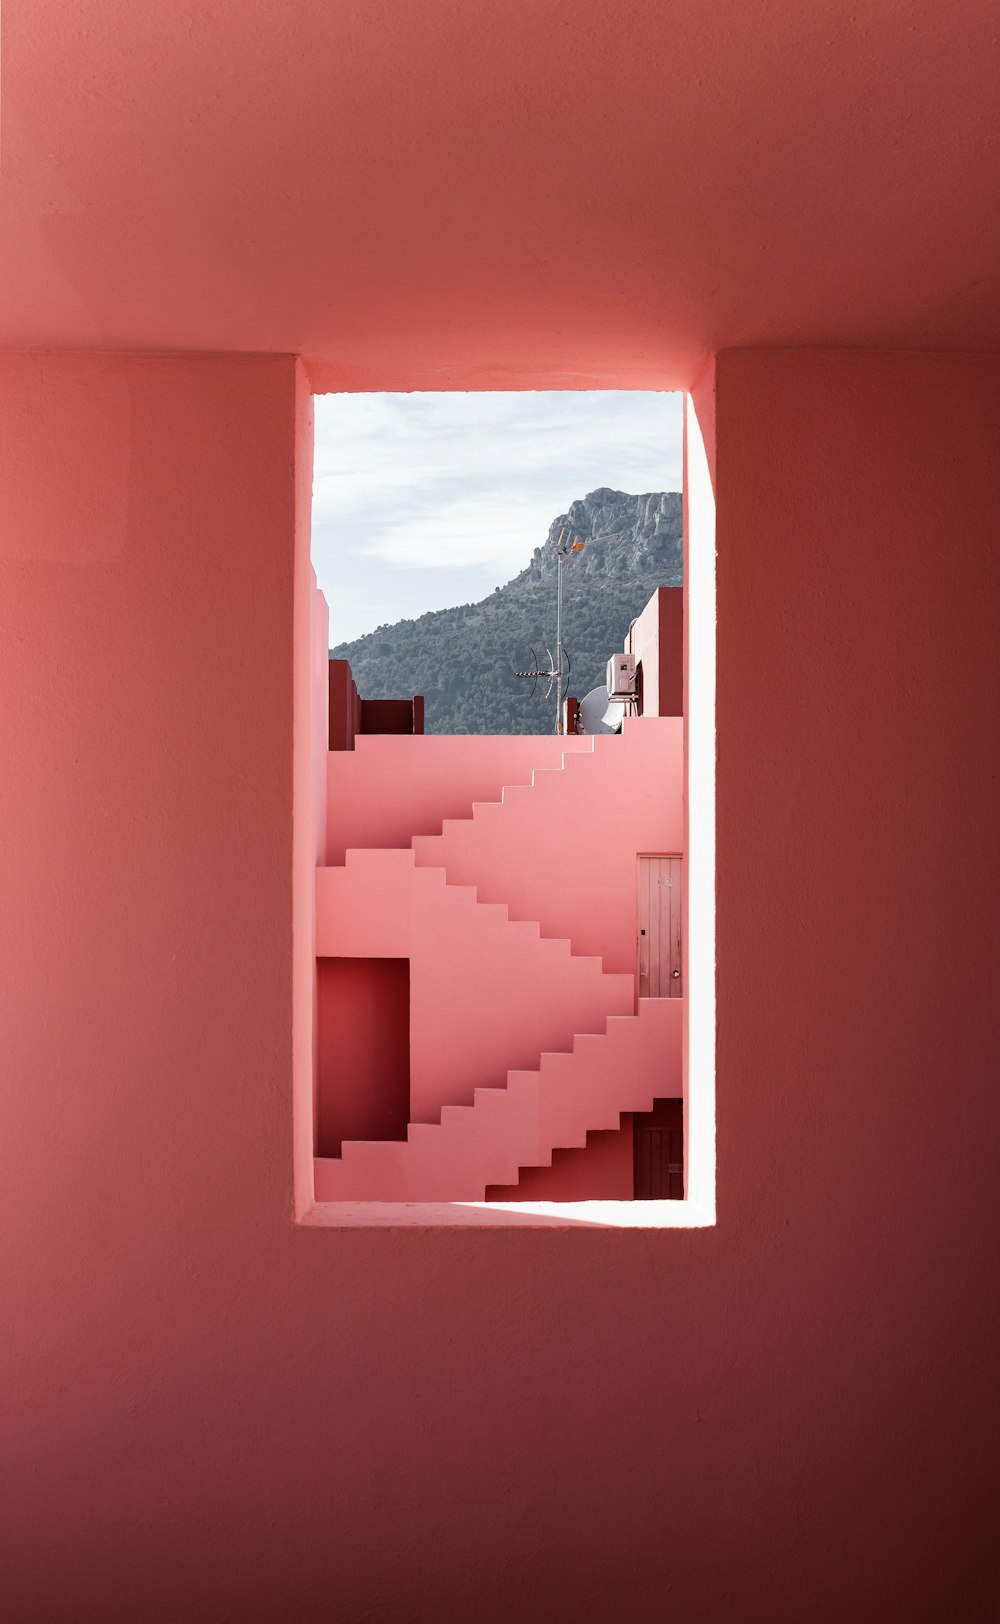 Una habitación rosa con vistas a una montaña